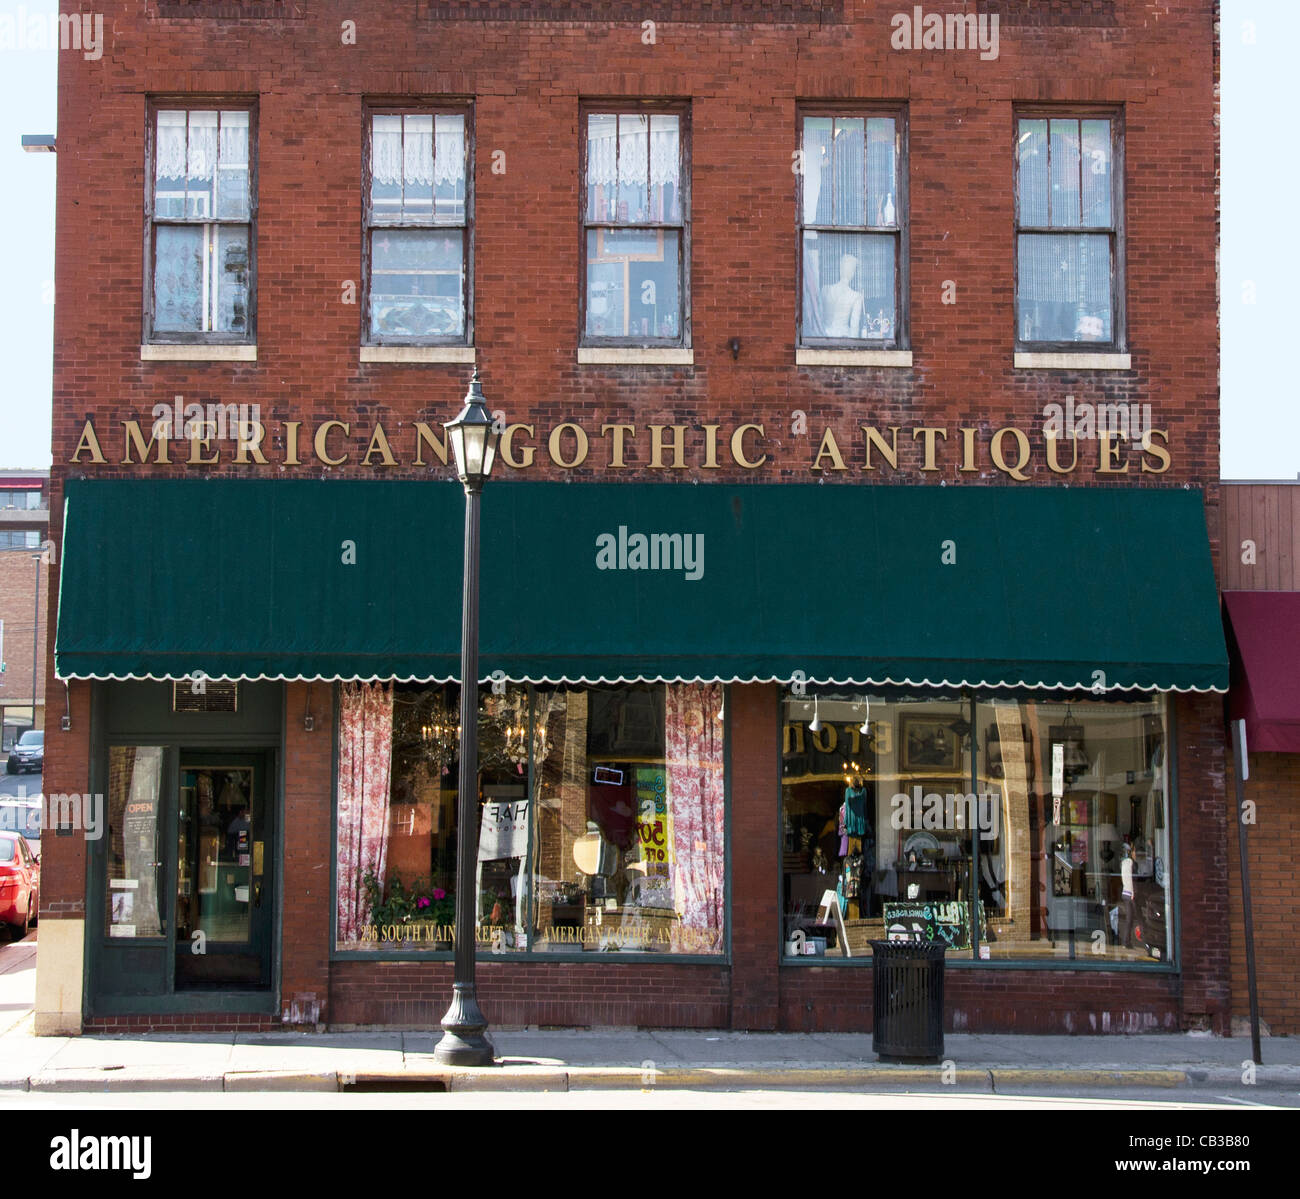 American Gothic antigüedades en Stillwater, Minnesota, una ciudad conocida por sus librerías, galerías de arte y tiendas de antigüedades. Foto de stock